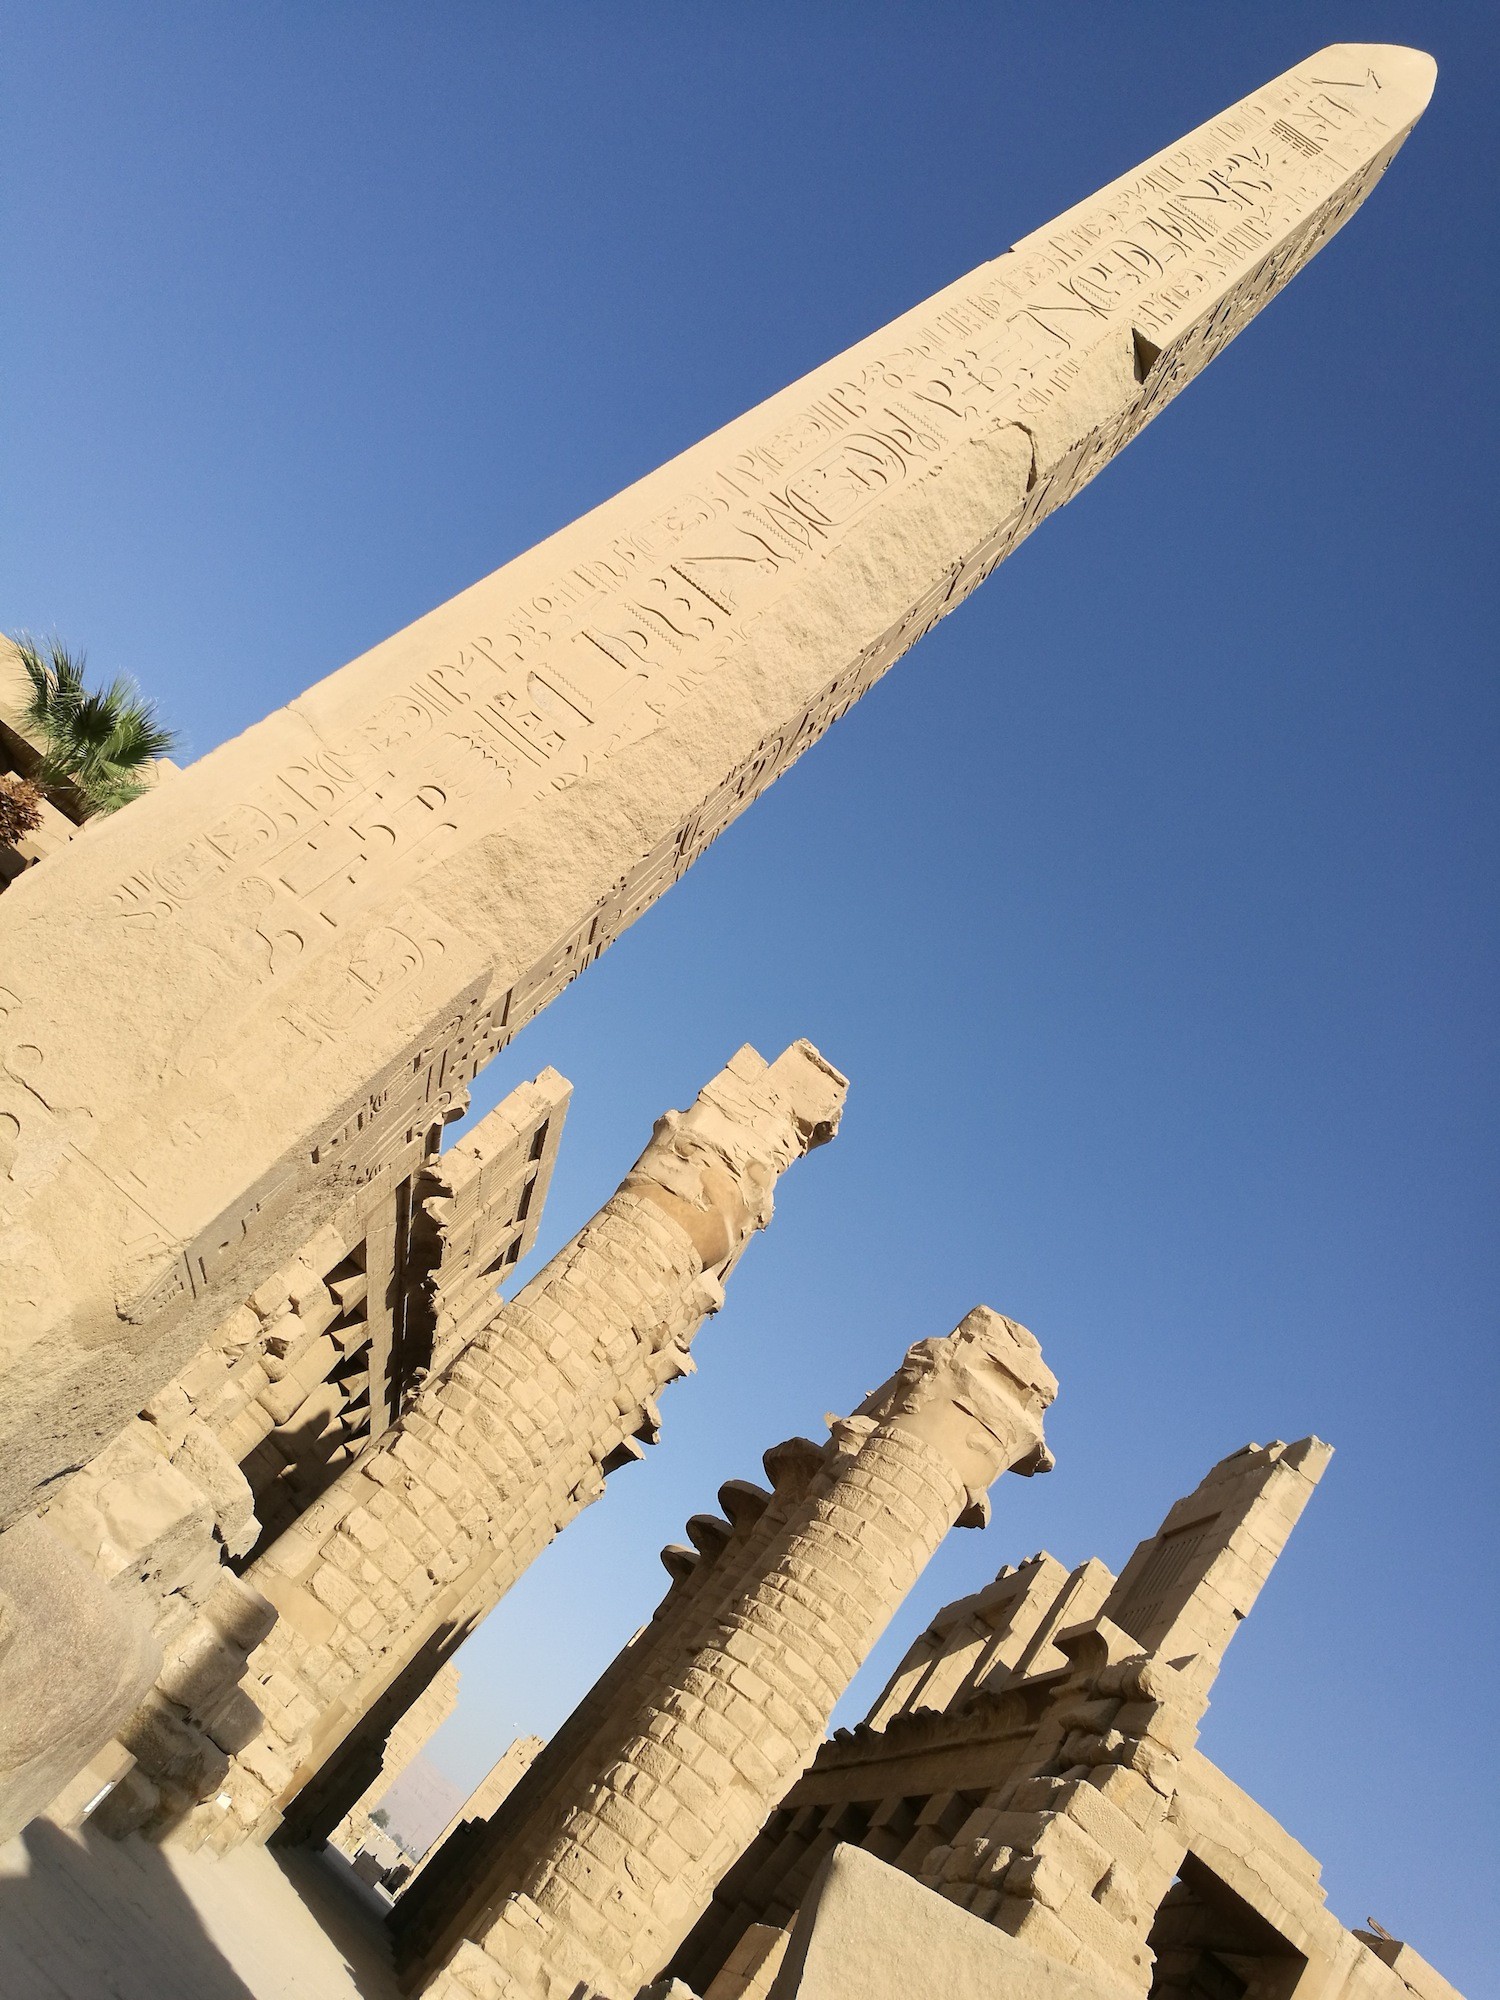 这就是著名的方尖塔Obelisk，埃及最高的一支（29.2公尺）就在Karnak Temple，是女王Hatshepsut为阿蒙神而建的。这Obelisk是在几百公里外的Aswan铸成的，以整块完整的花岗石打造雕刻，然后再完好无缺地运到这里（运送历时七个月），重达几百屯的方尖塔只以人工的力量把它给竖立起来（是完整无缺的整支obelisk） ，好伟大的一项工程啊！到现在考古学家还为 ‘如何利用人力把Obelisk竖立起来’有些争议。